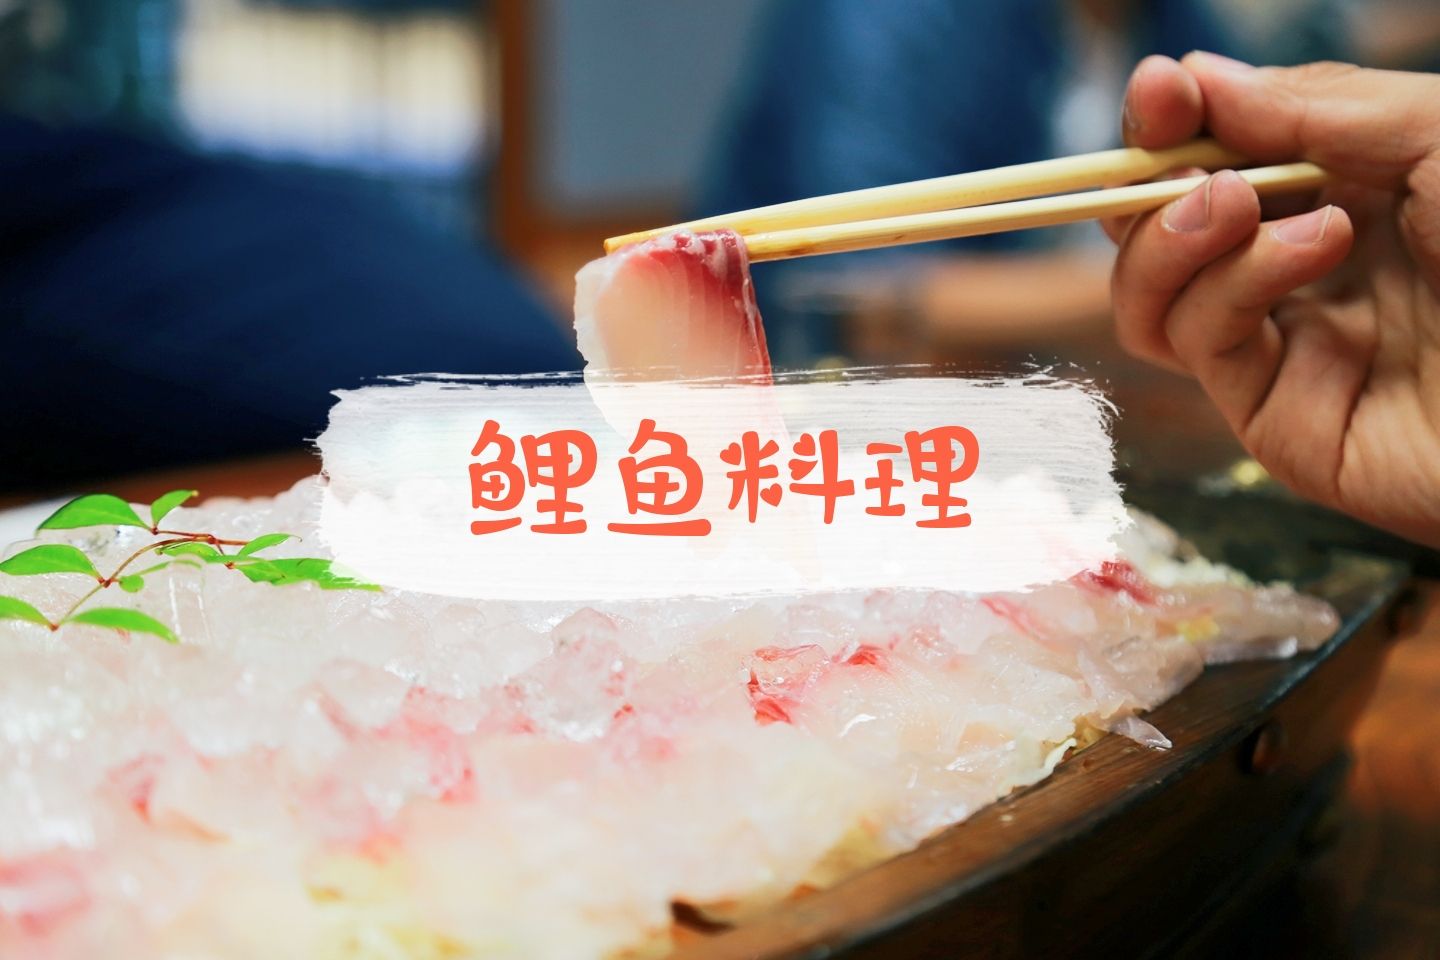 日本小城特色美食，超大份的鲤鱼料理🐟  我好像还没吃过鲤鱼，去日本的时候朋友说鲤鱼料理感觉挺新鲜的。